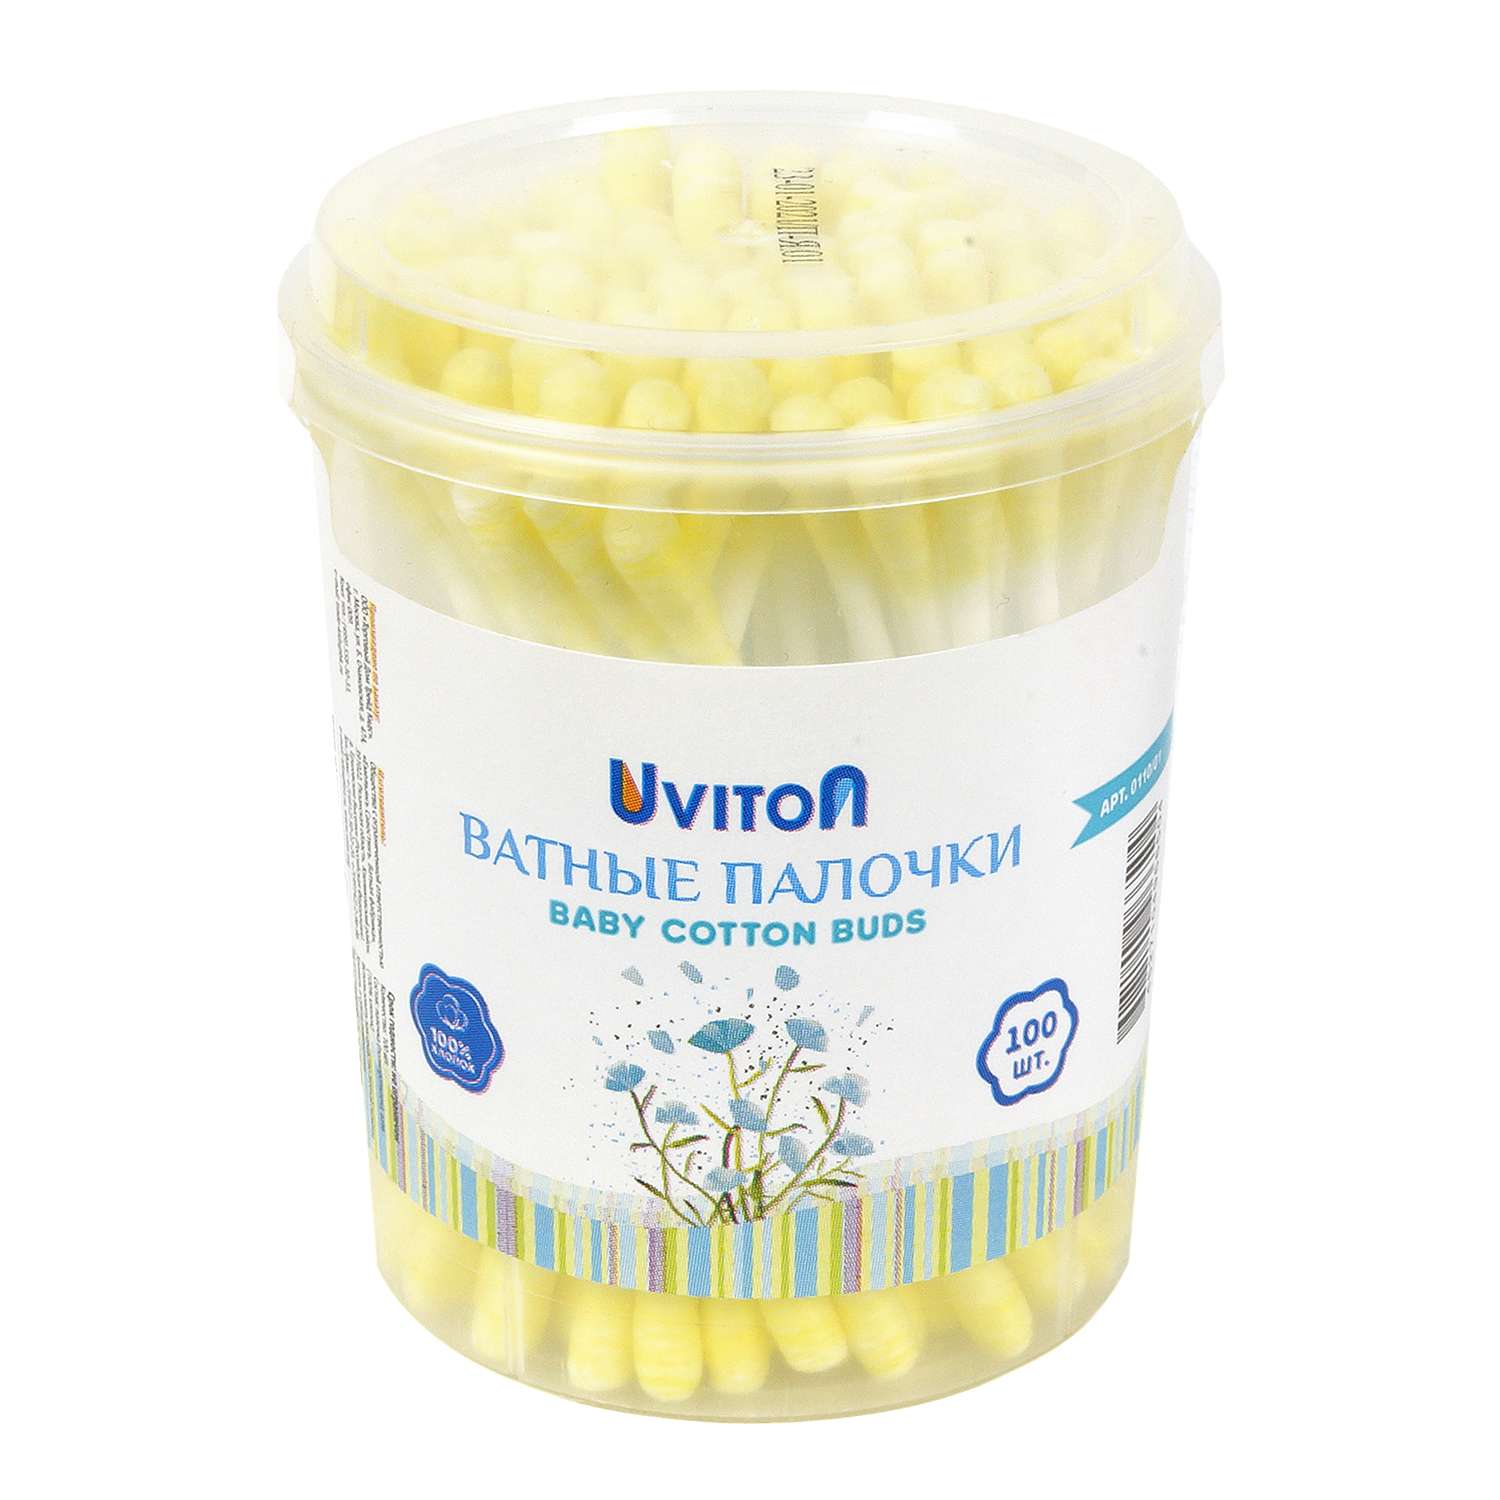 Ватные палочки Uviton для макияжа и для новорожденных 100шт. желтый - фото 1